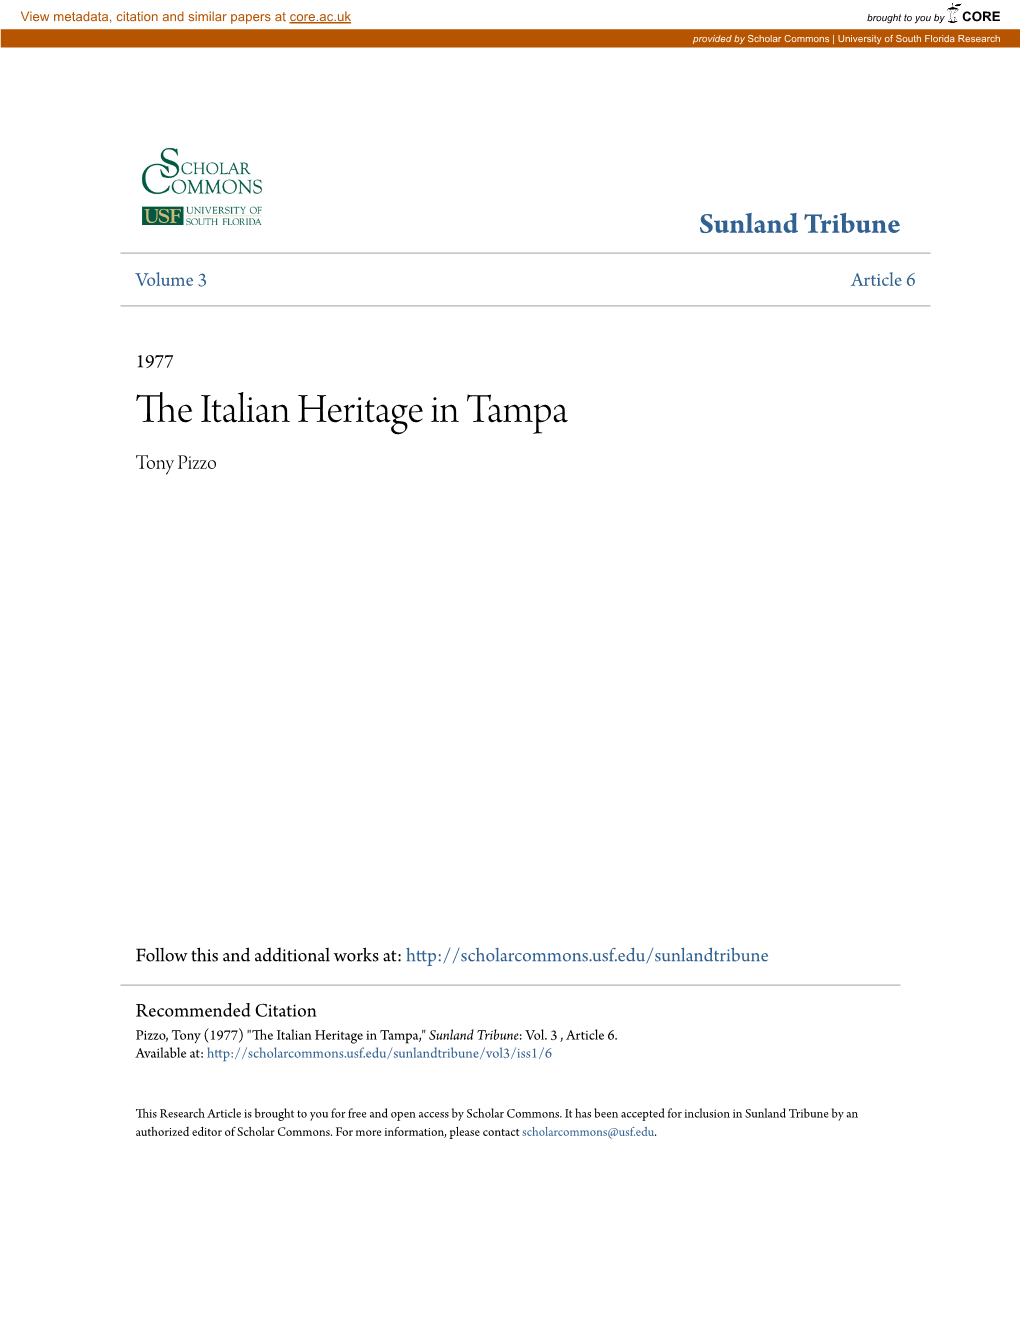 The Italian Heritage in Tampa